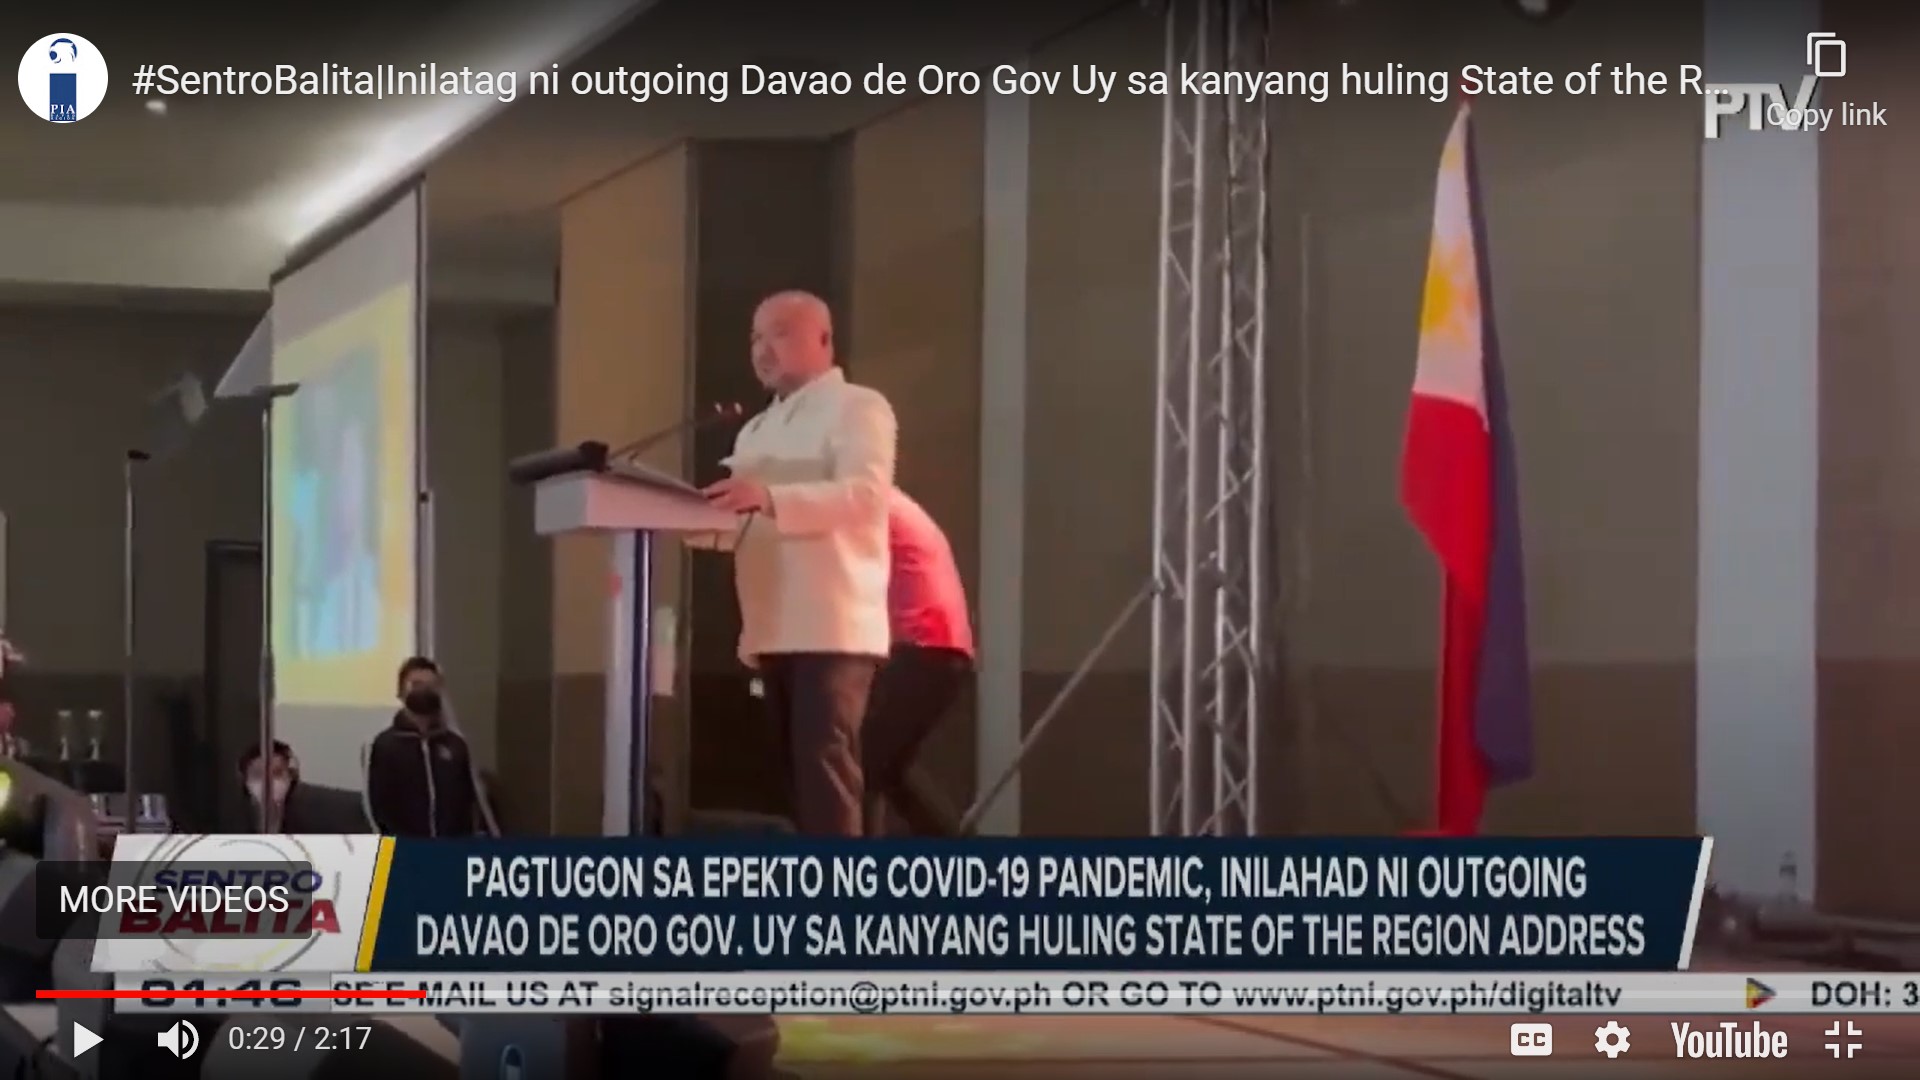 Pagtugon sa epekto ng COVID-19 pandemic at paghina ng insurgency sa Davao region, inilatag ni outgoing Davao de Oro Gov. Uy sa kanyang huling State of the Region Address